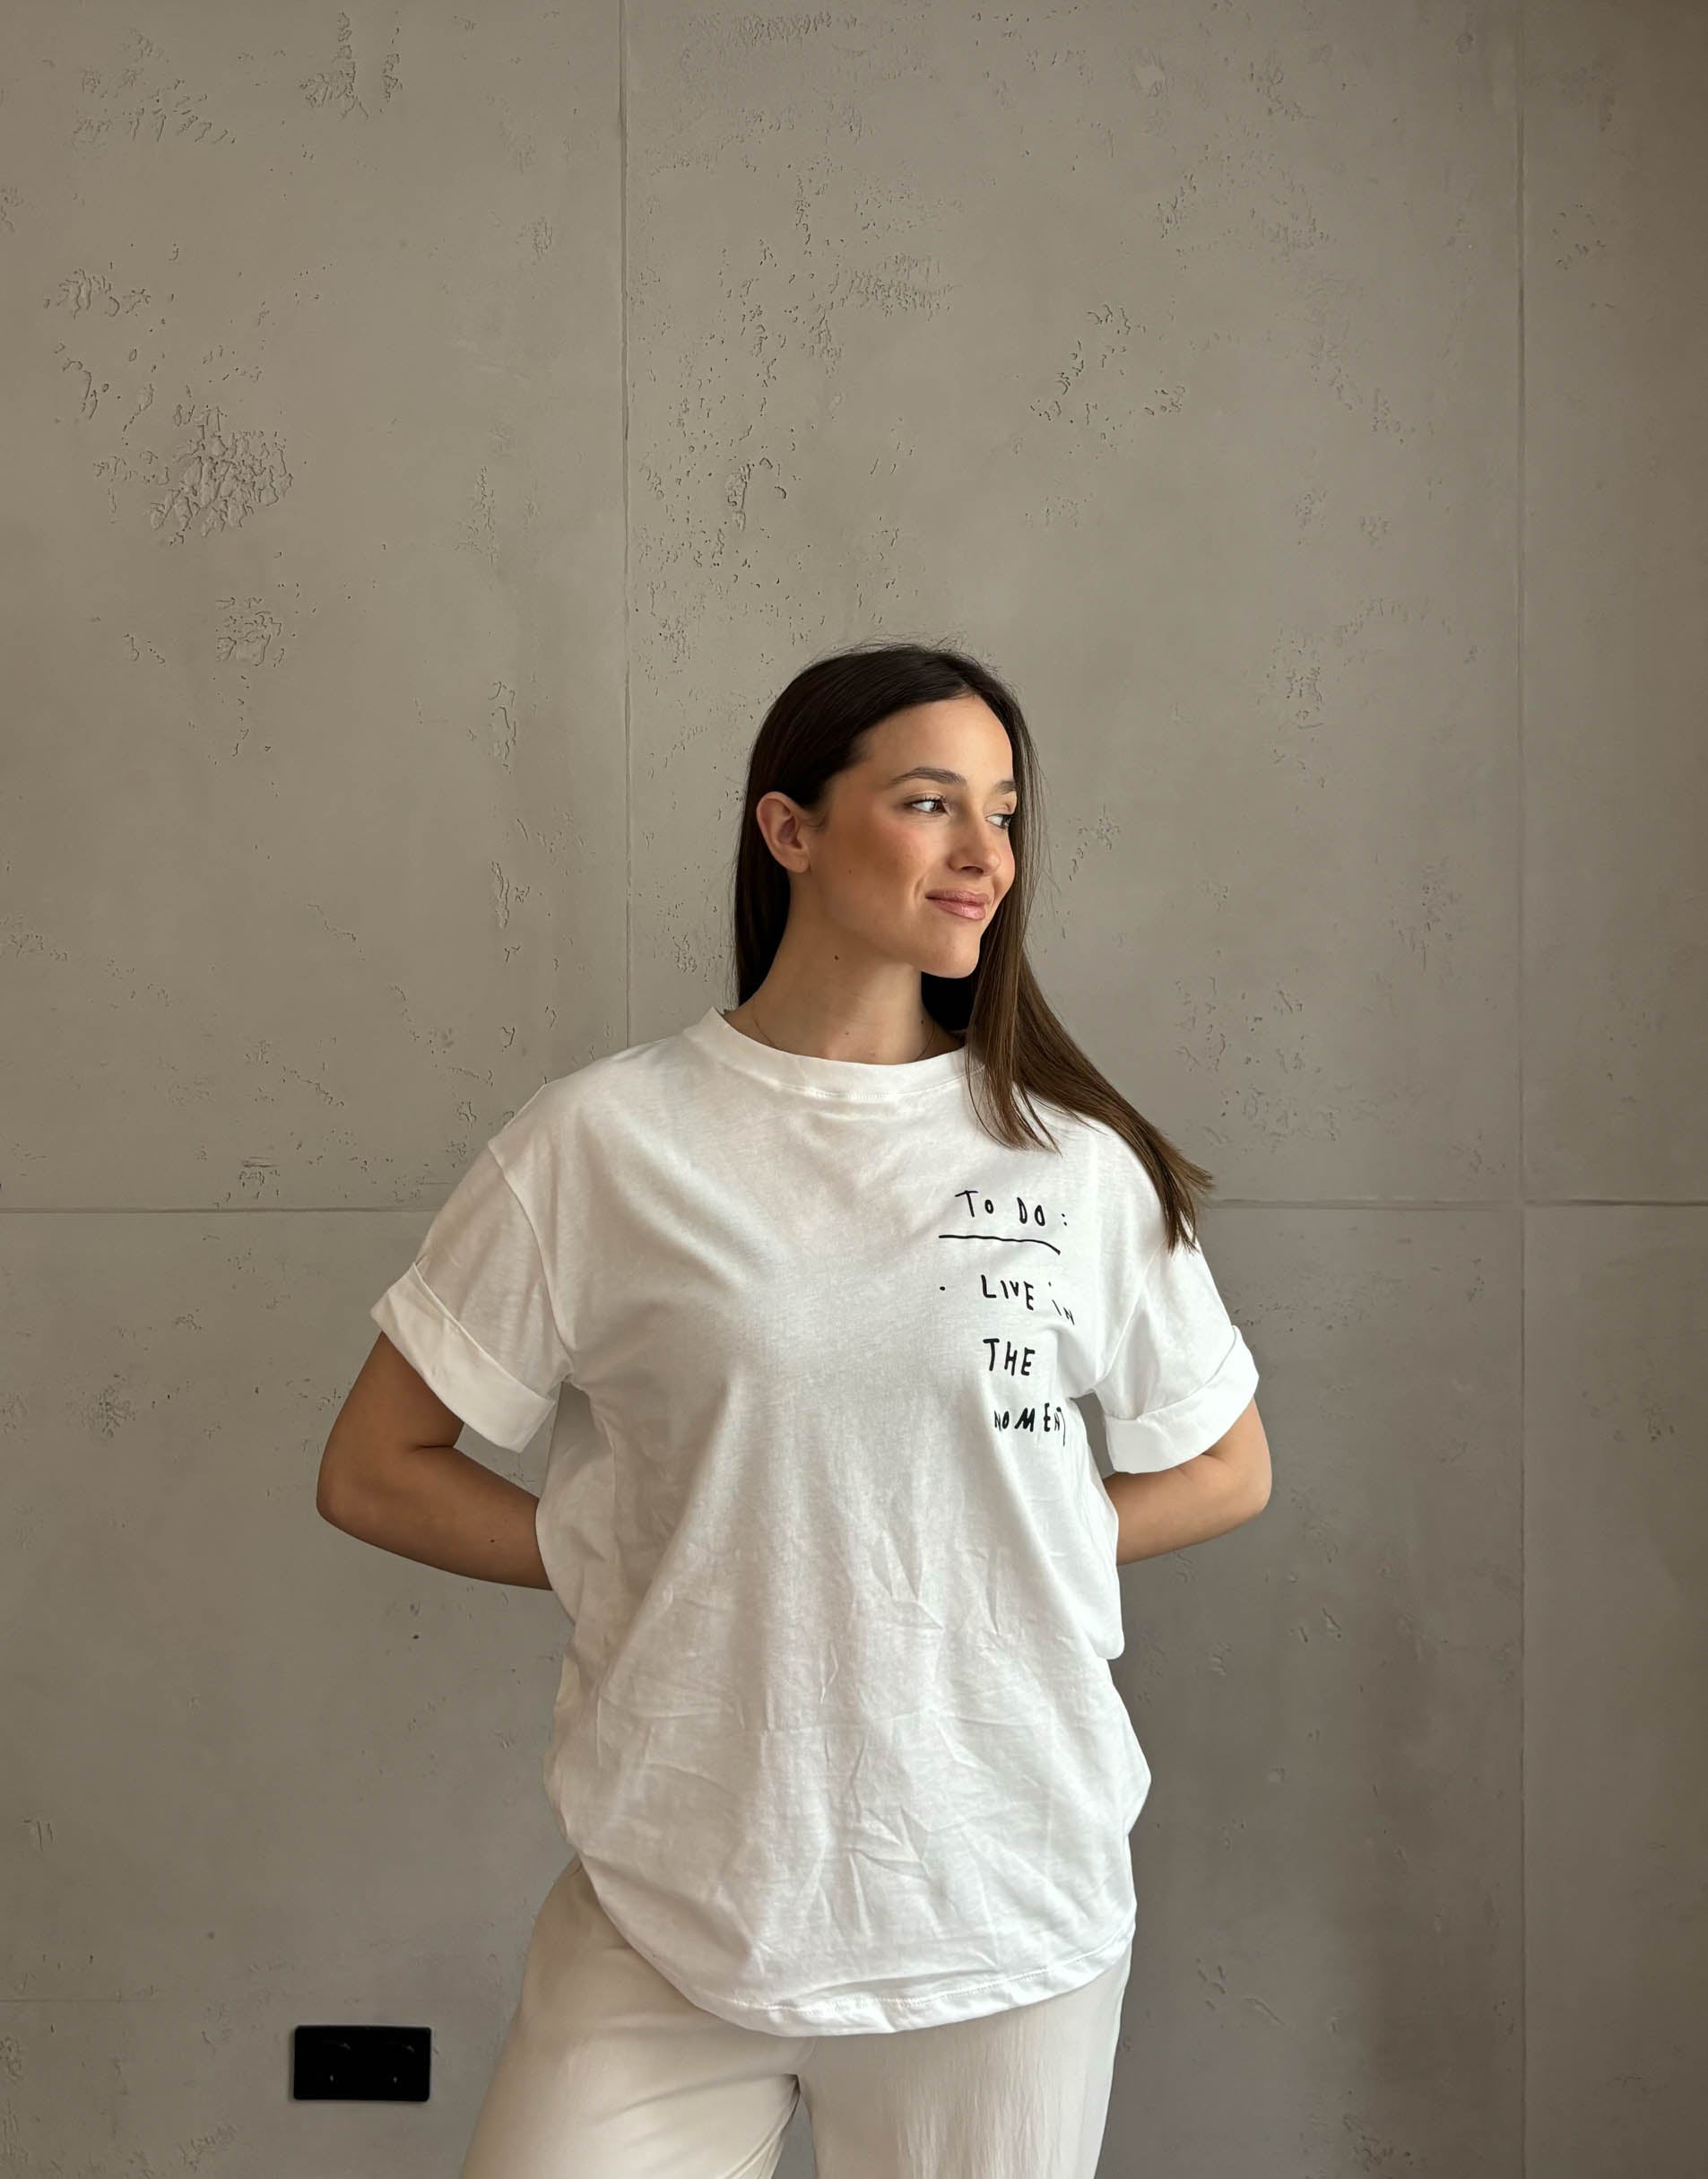 Frau mit brauen Haaren trägt weißes T-Shirt mit Schriftzug